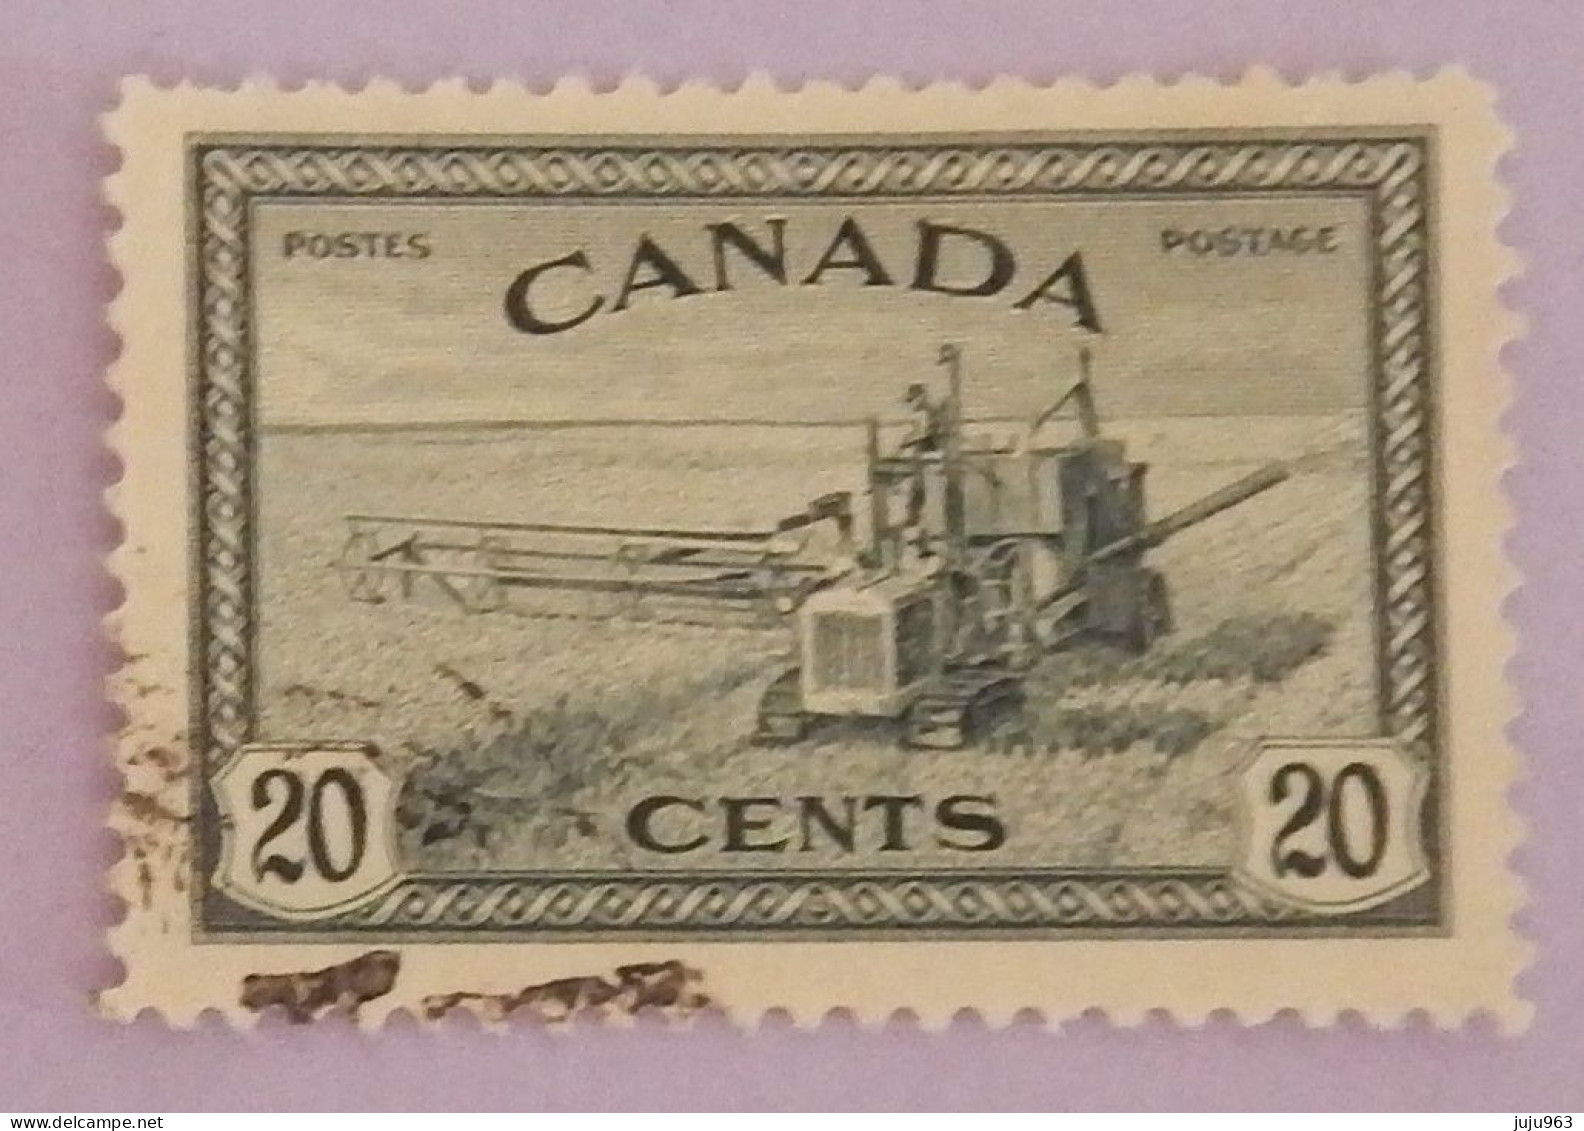 CANADA YT 222 OBLITÉRÉ "FAUCHEUSE-LIEUSE" ANNÉE 1946 - Used Stamps